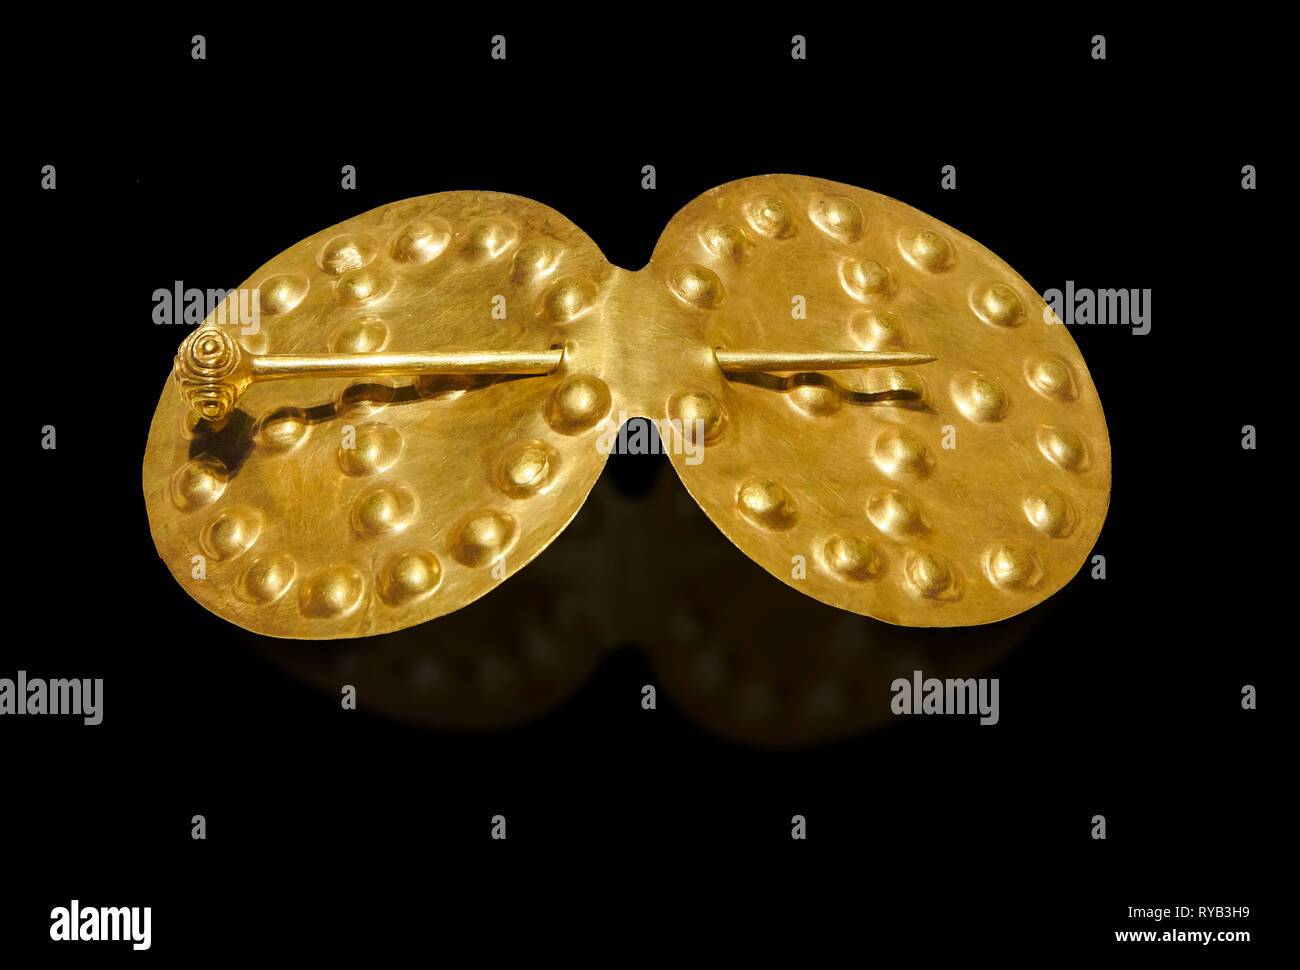 L'âge du bronze de la boucle d'or Hatti tombe L, peut-être un Âge de Bronze tombe royale (2500 avant J.-C. à 2250 av. J.-C.) - Alacahoyuk - Musée d'Anatolian Civilizati Banque D'Images